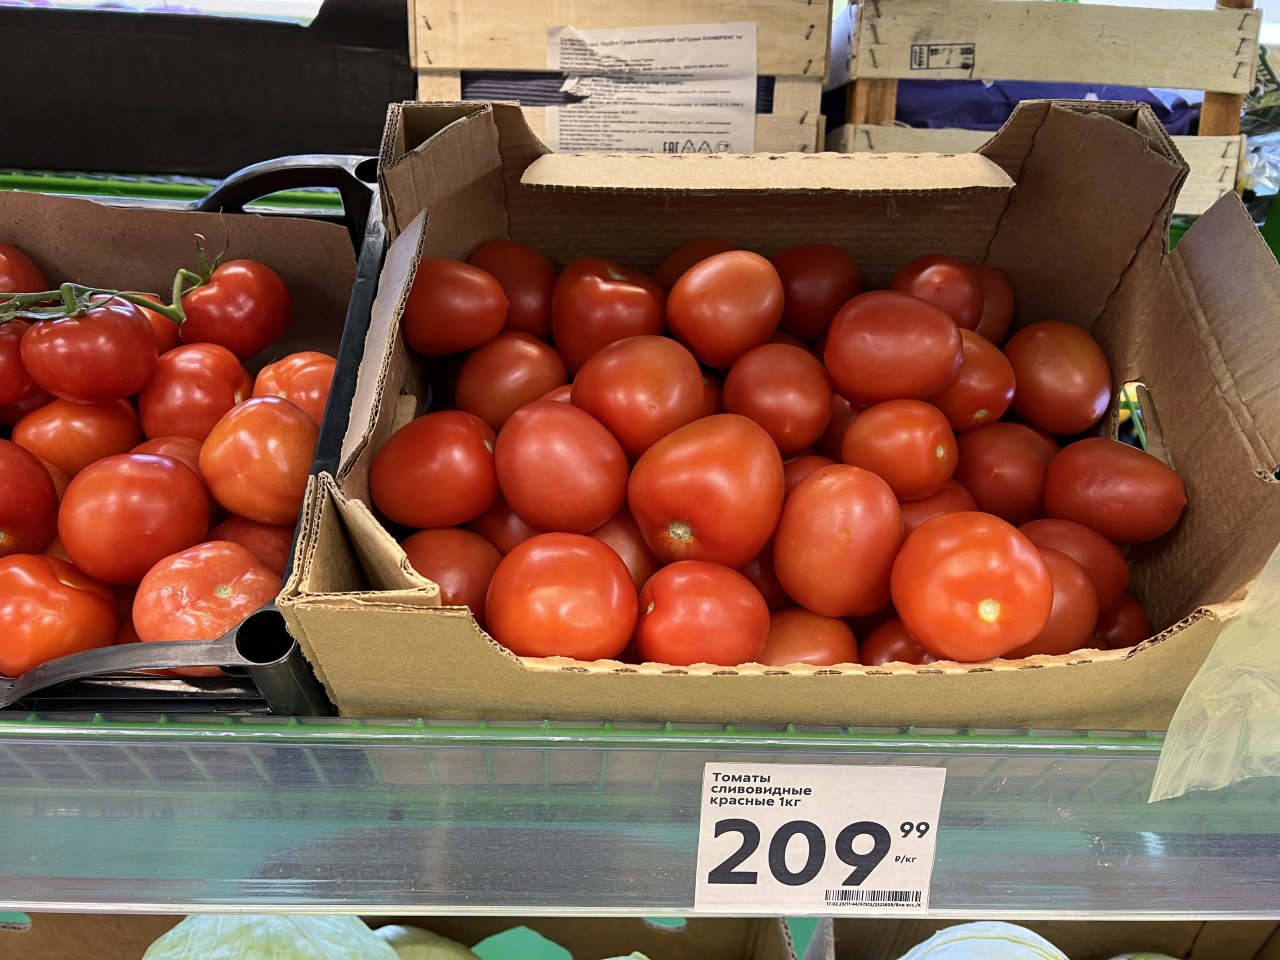 Сколько стоит помидоры в магазинах. Сколько стоят помидоры. Сколько стоят помидоры в среднем. Сколько стоят помидоры в Пятерочке. Сколько стоят помидоры в Якутии.